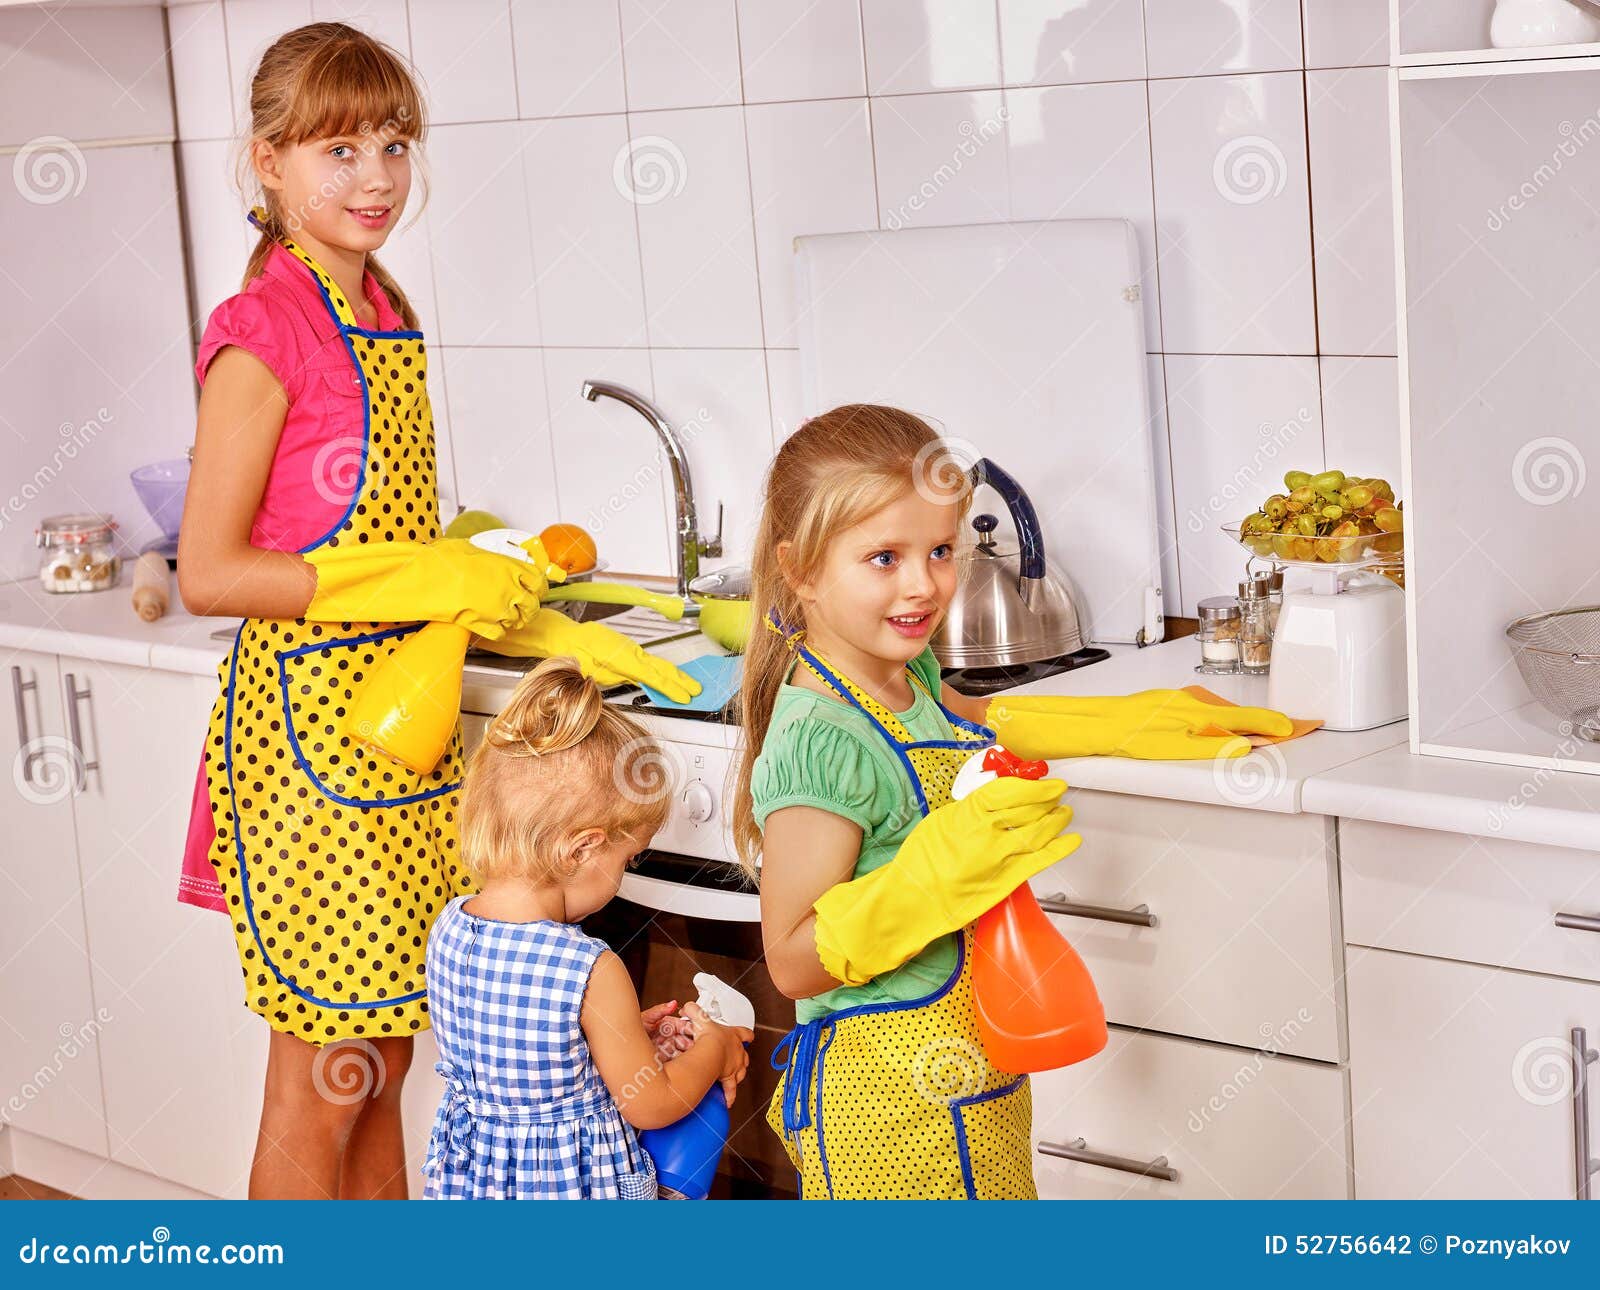 Kinder, die an der Küche kochen. Kinderkleines Mädchen, das an der Küche kocht